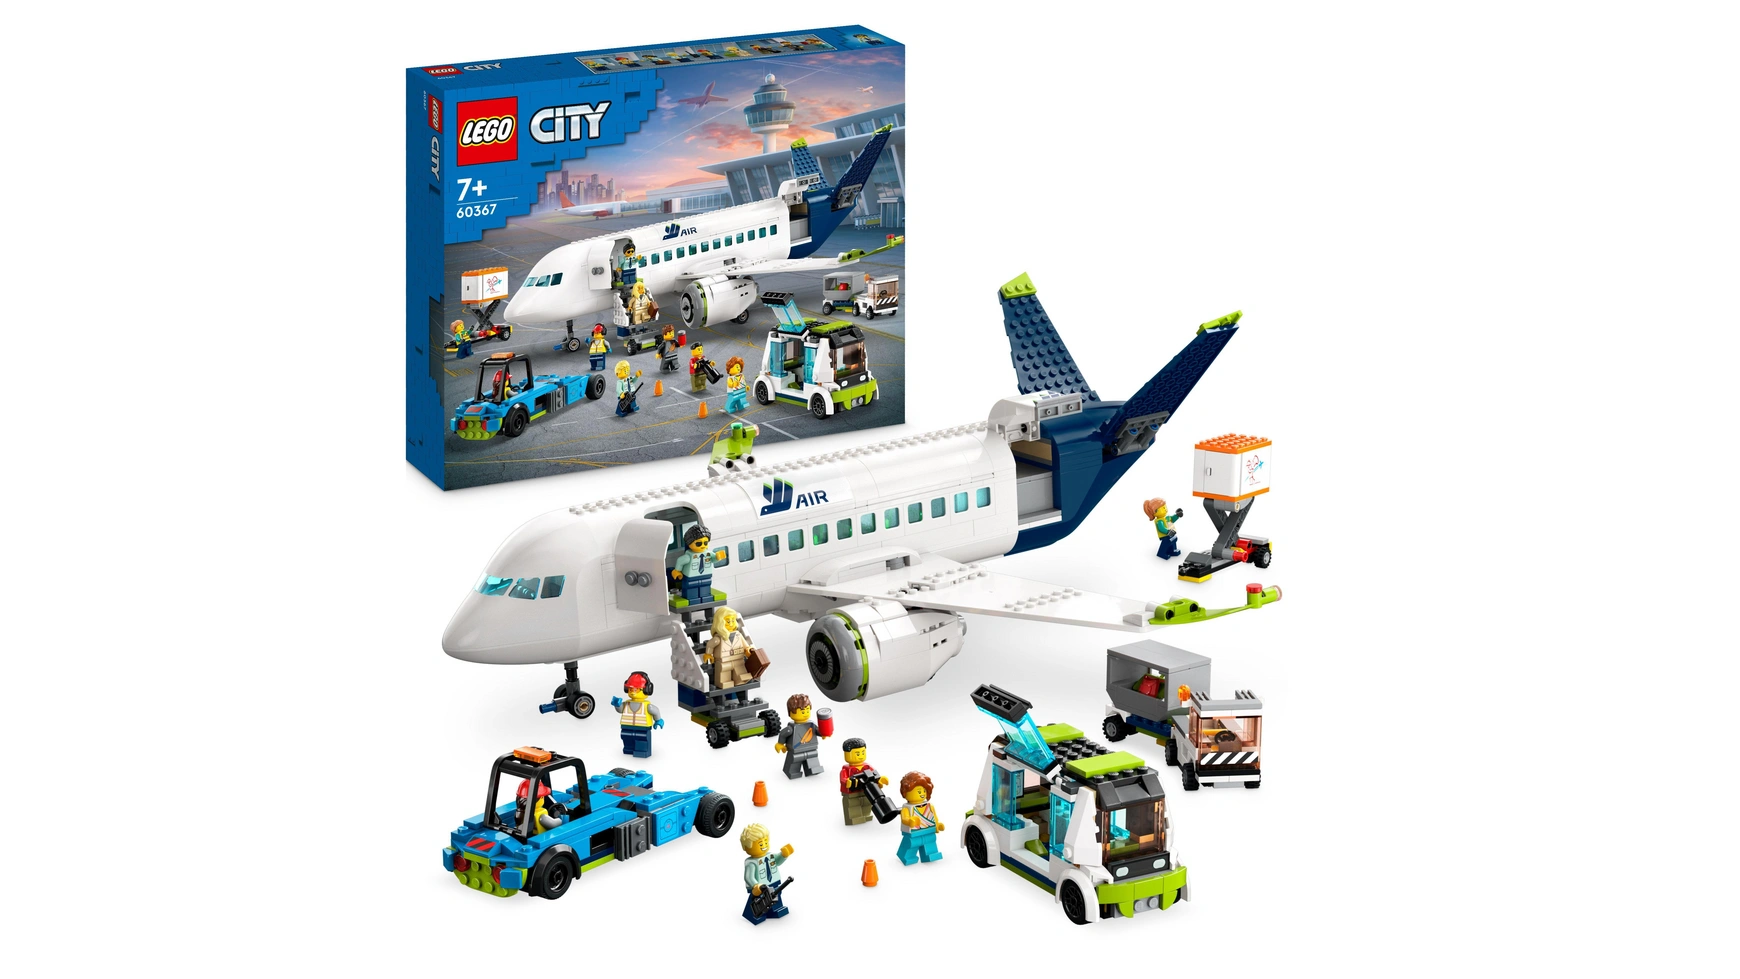 Lego City Набор пассажирских самолетов, большая модель самолета с транспортными средствами